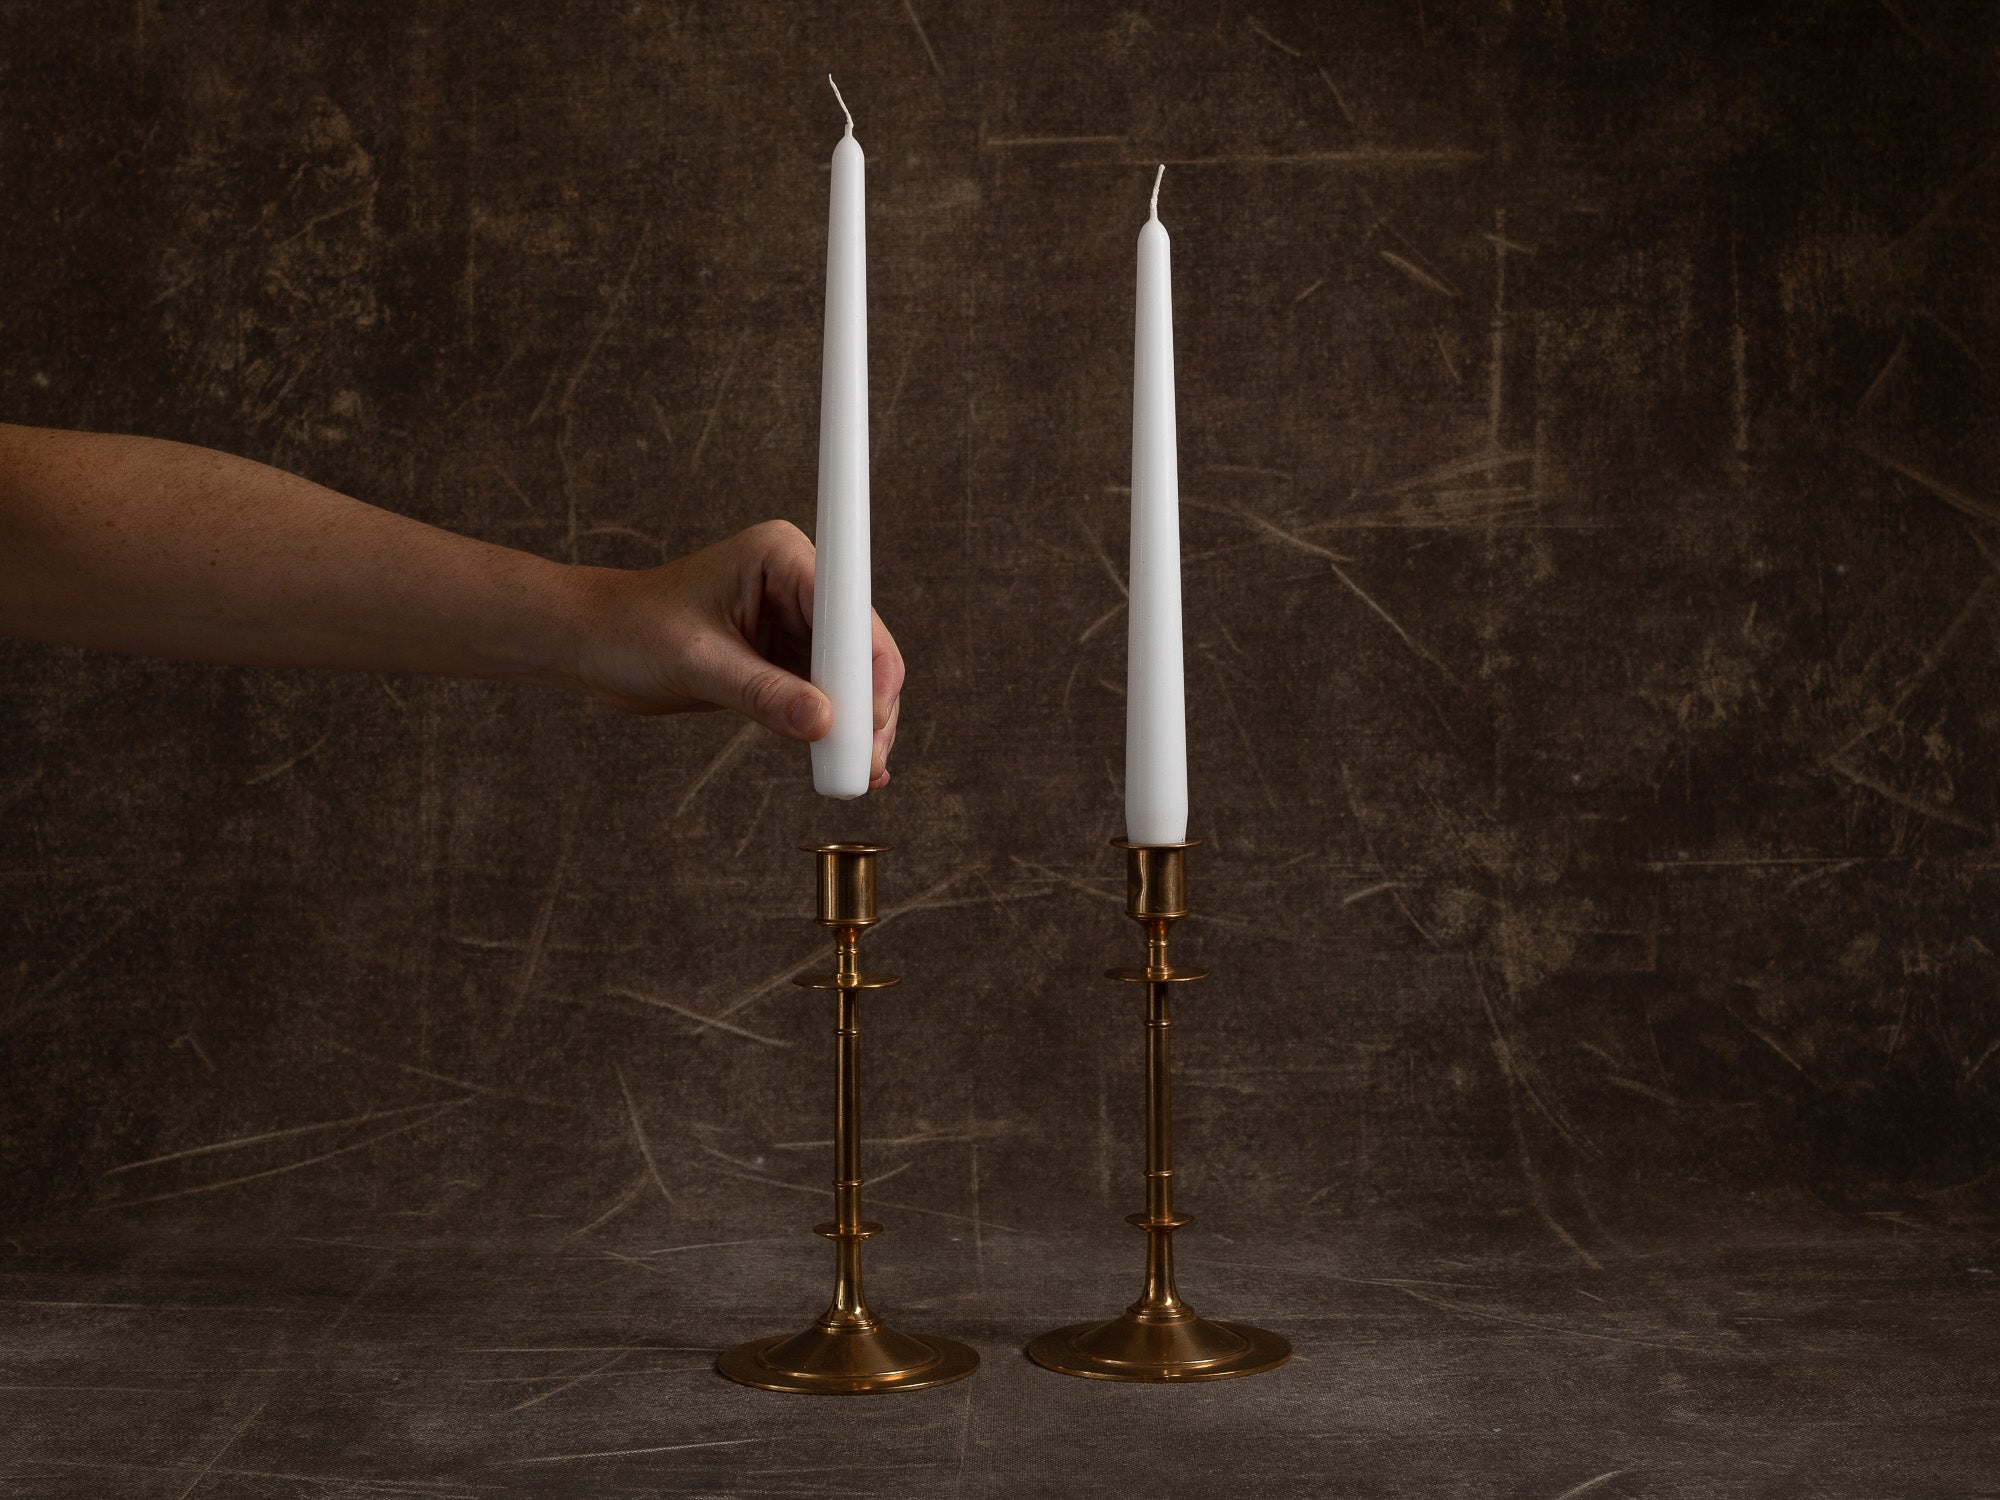 Paire de flambeaux modèle 61 par Gusum Bruk, Suède (vers 1900)..Pair of candle holders model 61 by Gusum Bruk, Sweden (circa 1900)